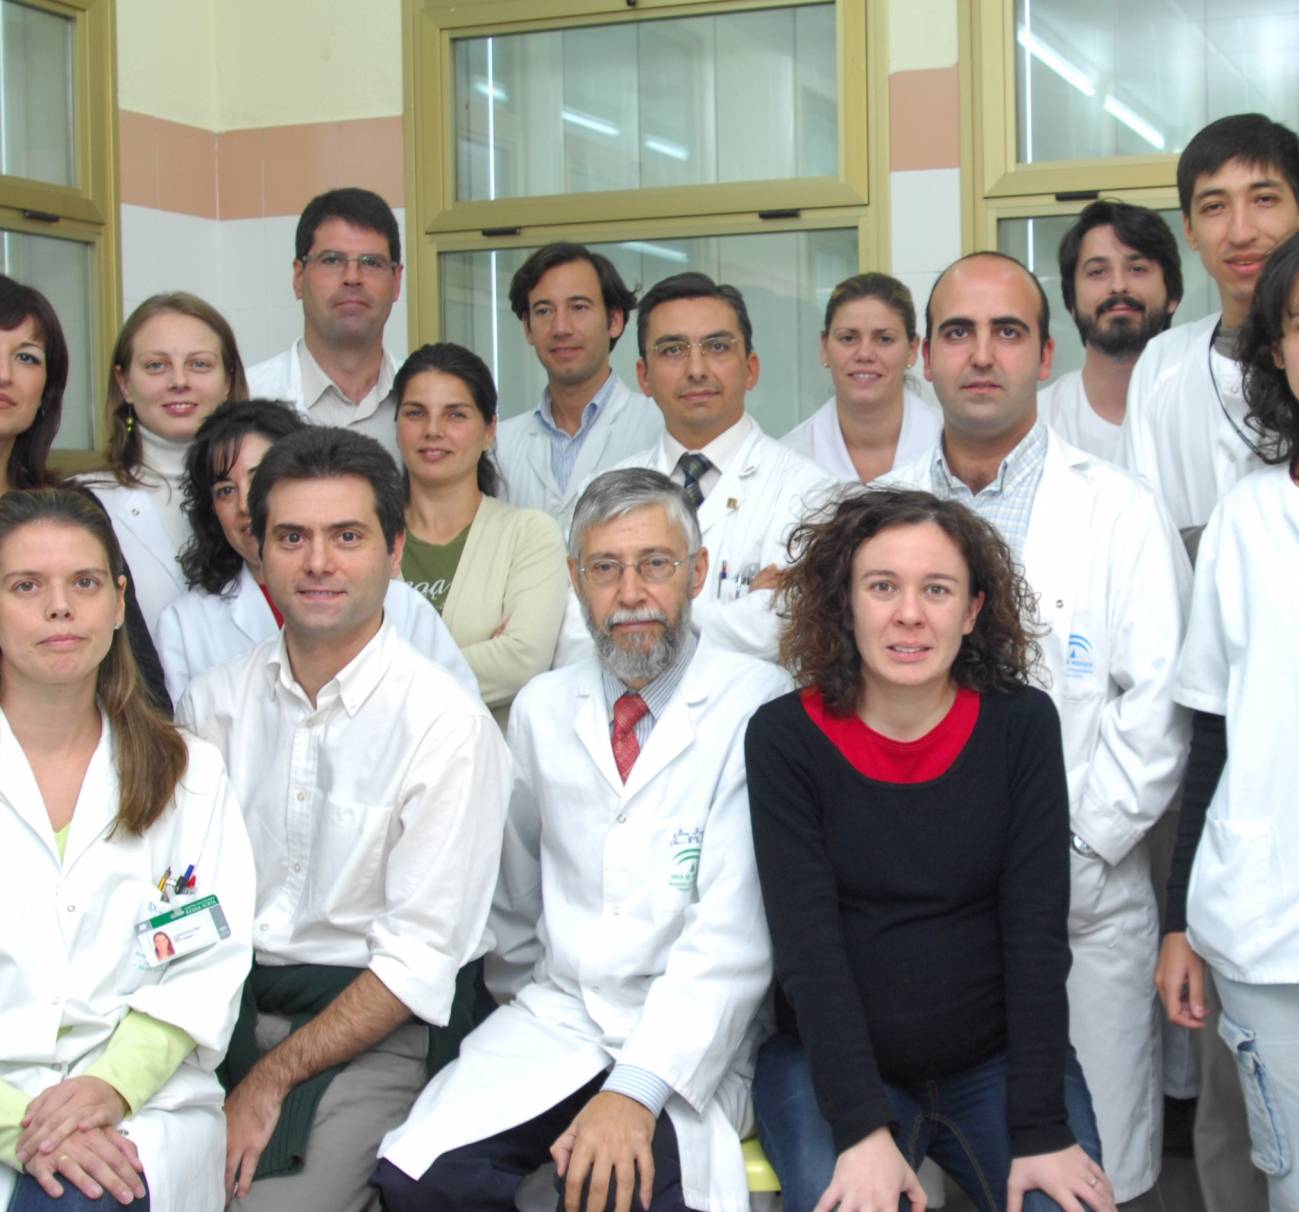 Grupo del investigador Francisco Fuentes, situado atrás a la izquierda / Fundación Descubre